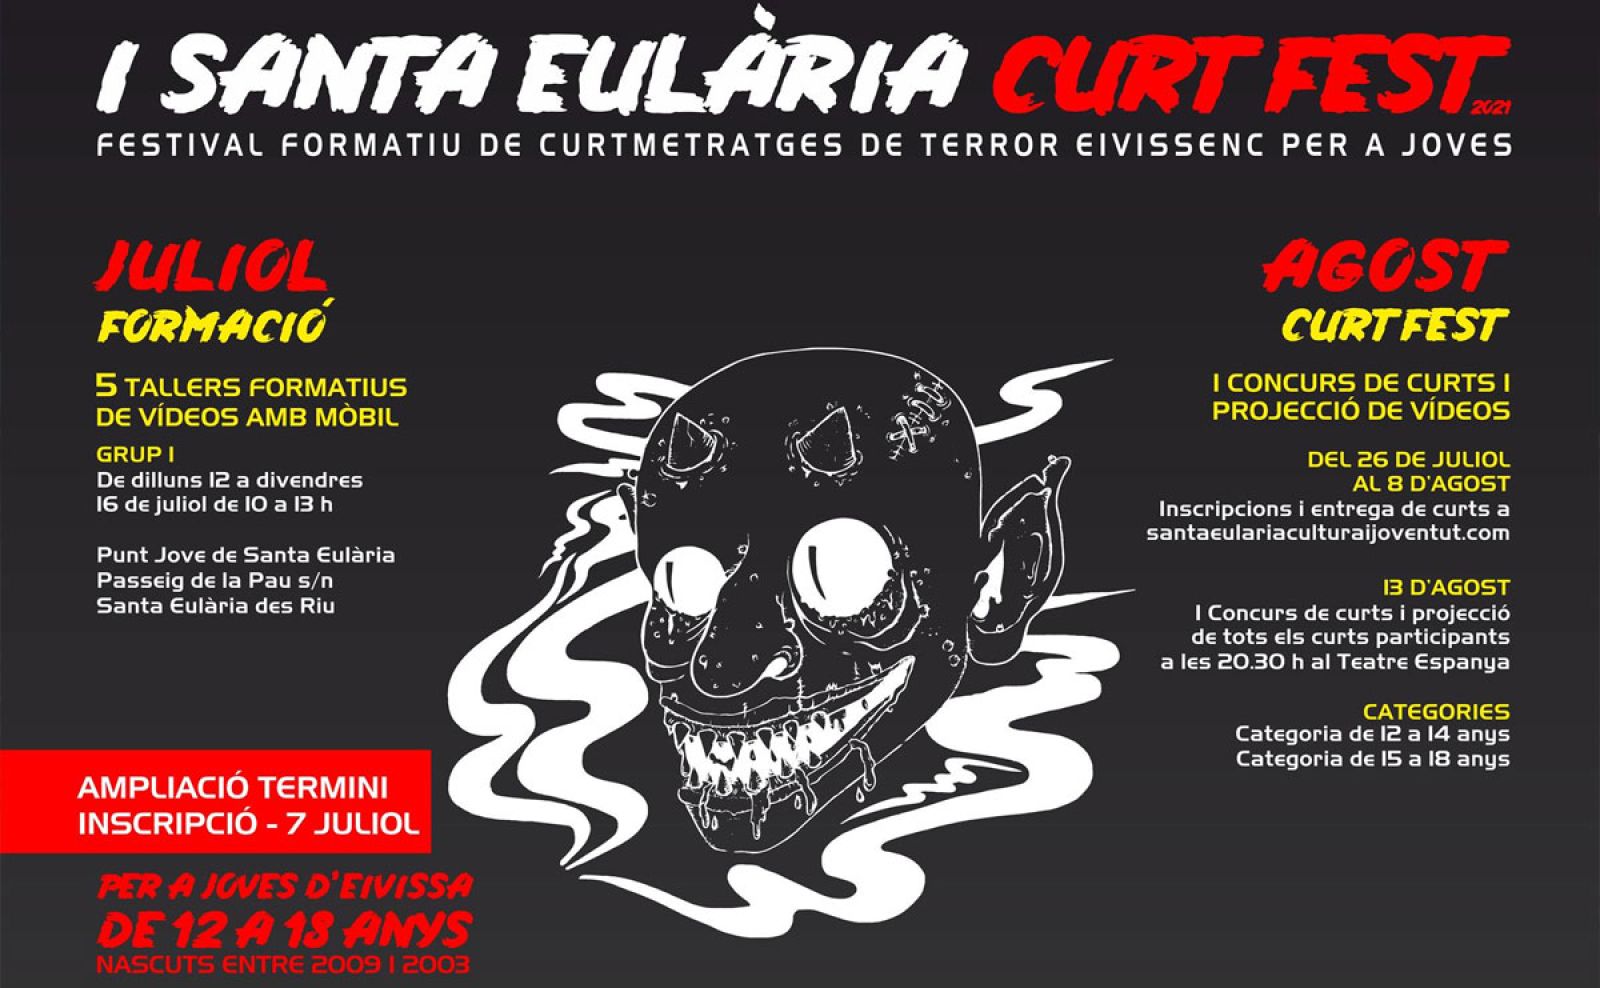 Obert el termini d’inscripció per al concurs de curts de terror realitzats per joves ‘I Santa Eulària Curt Fest’